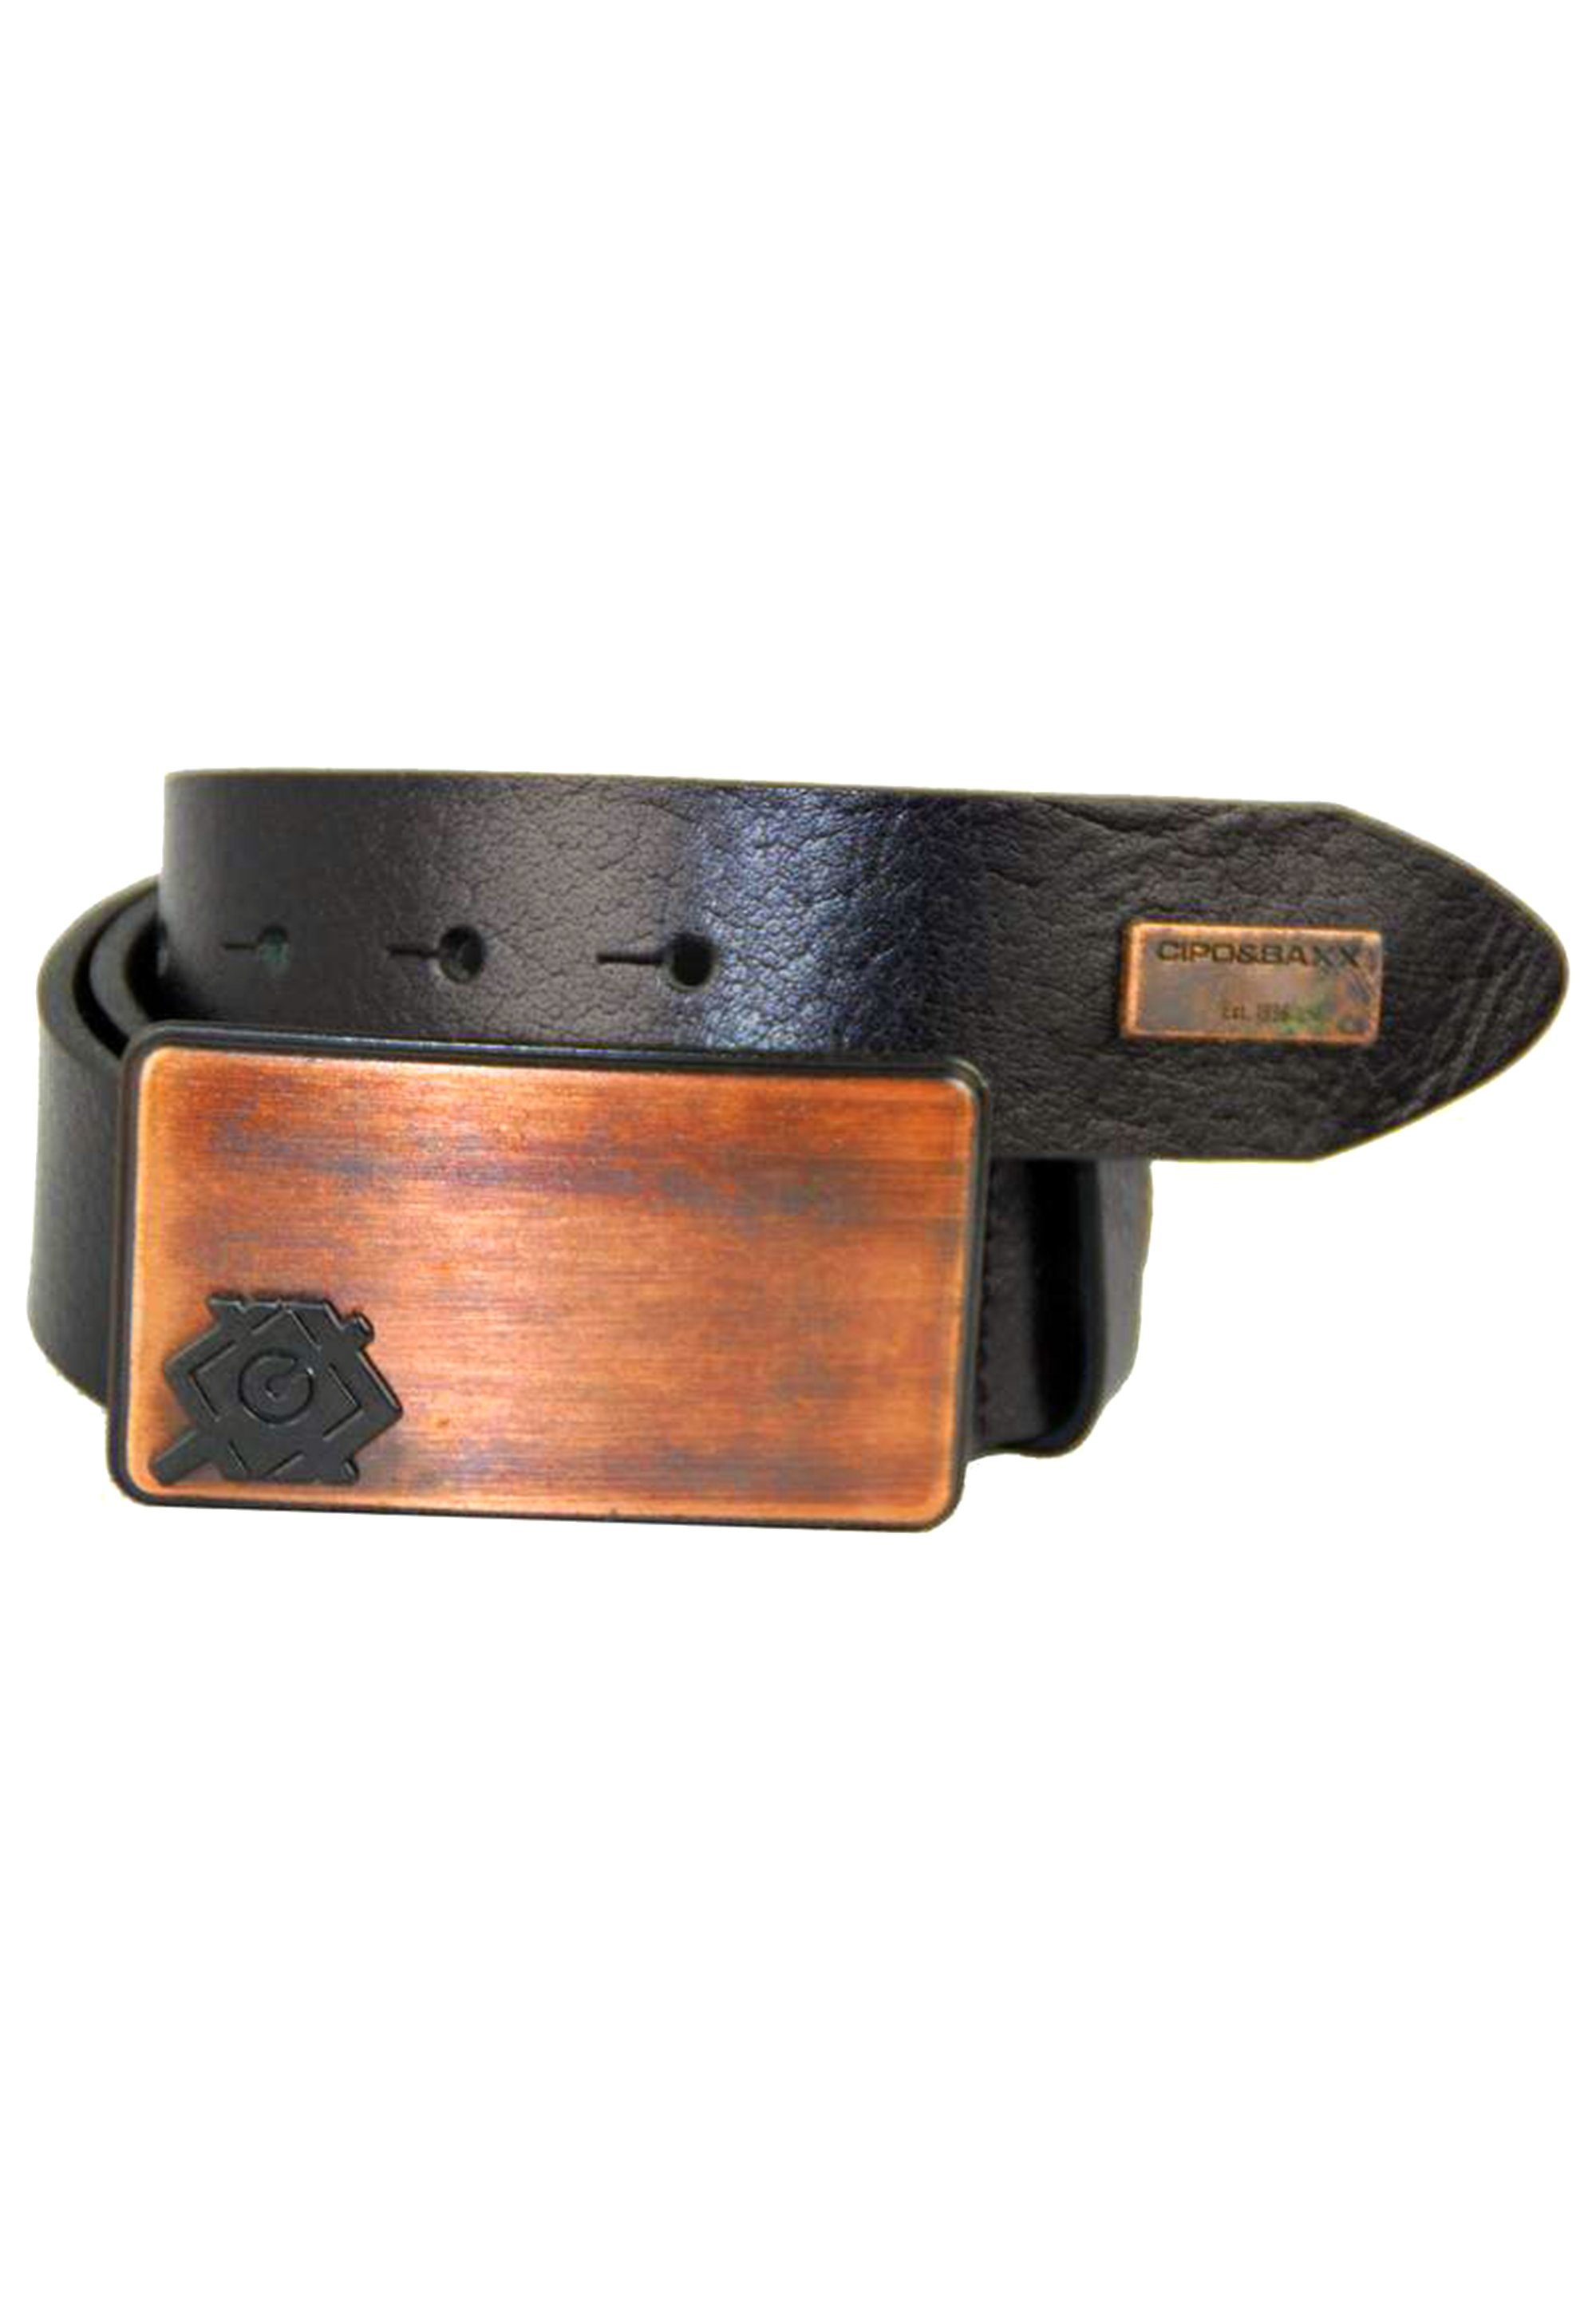 Cipo & Metallschnalle Ledergürtel stylischer schwarz mit Baxx